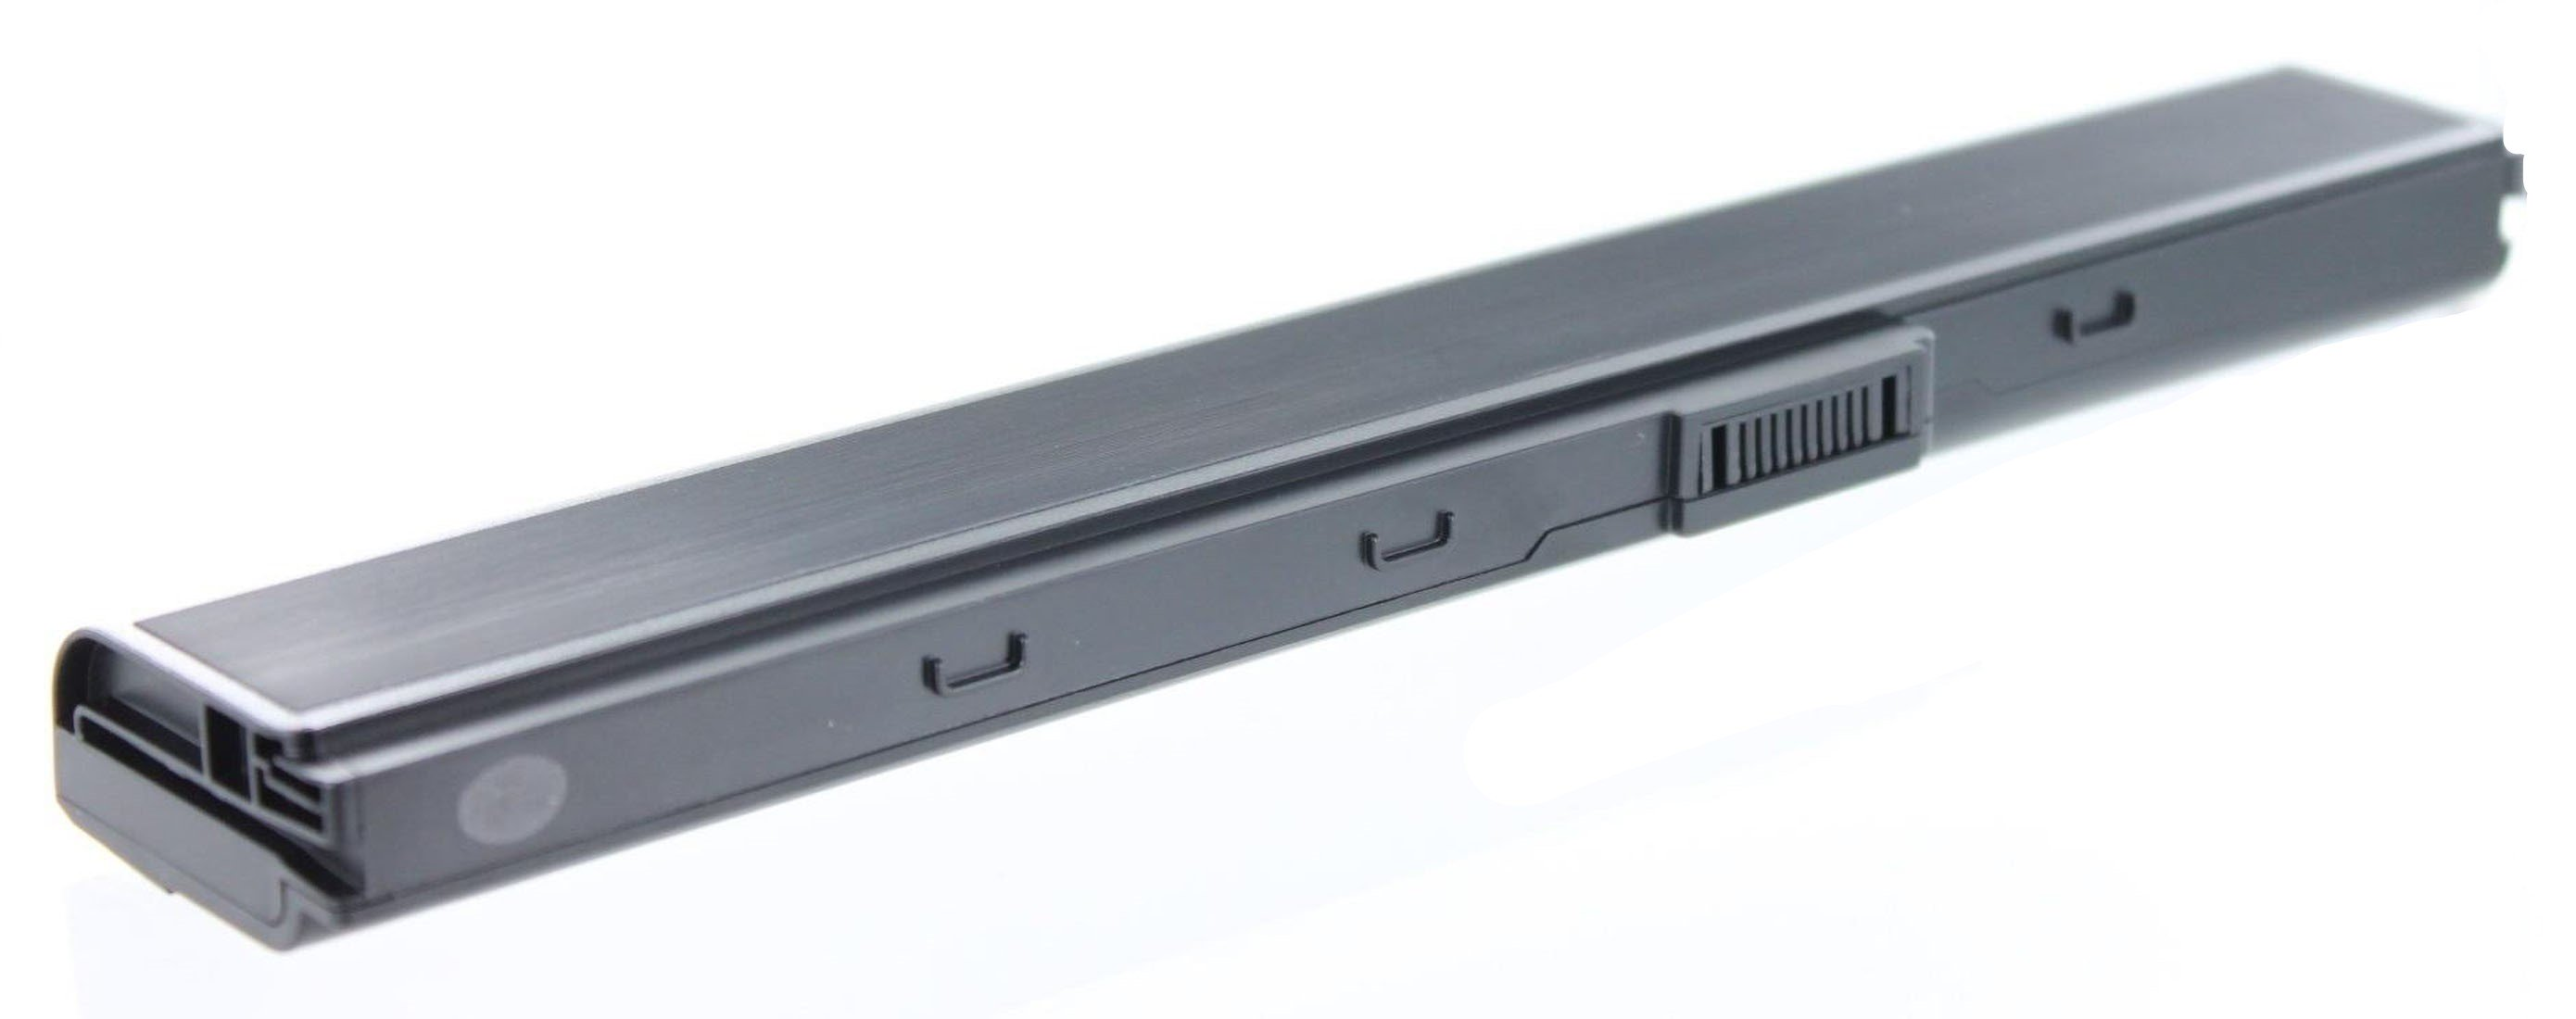 AGI Akku kompatibel mit Volt, Asus Notebookakku, 52JU-SX116V 4400 Li-Ion mAh 10.8 Pro